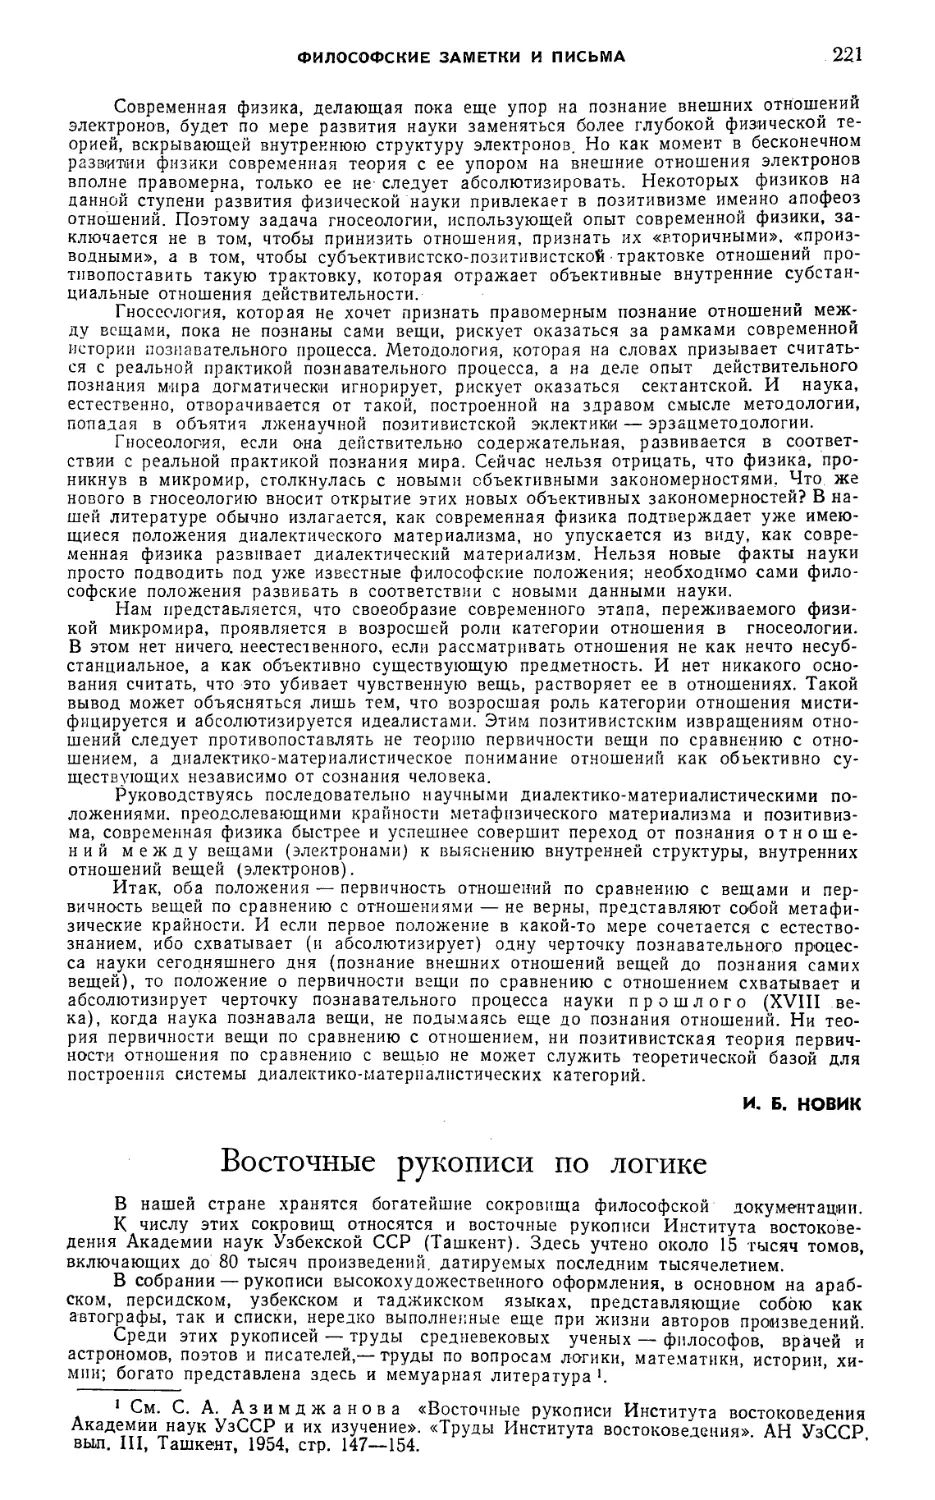 А. П. Примаковский — Восточные рукописи по логике